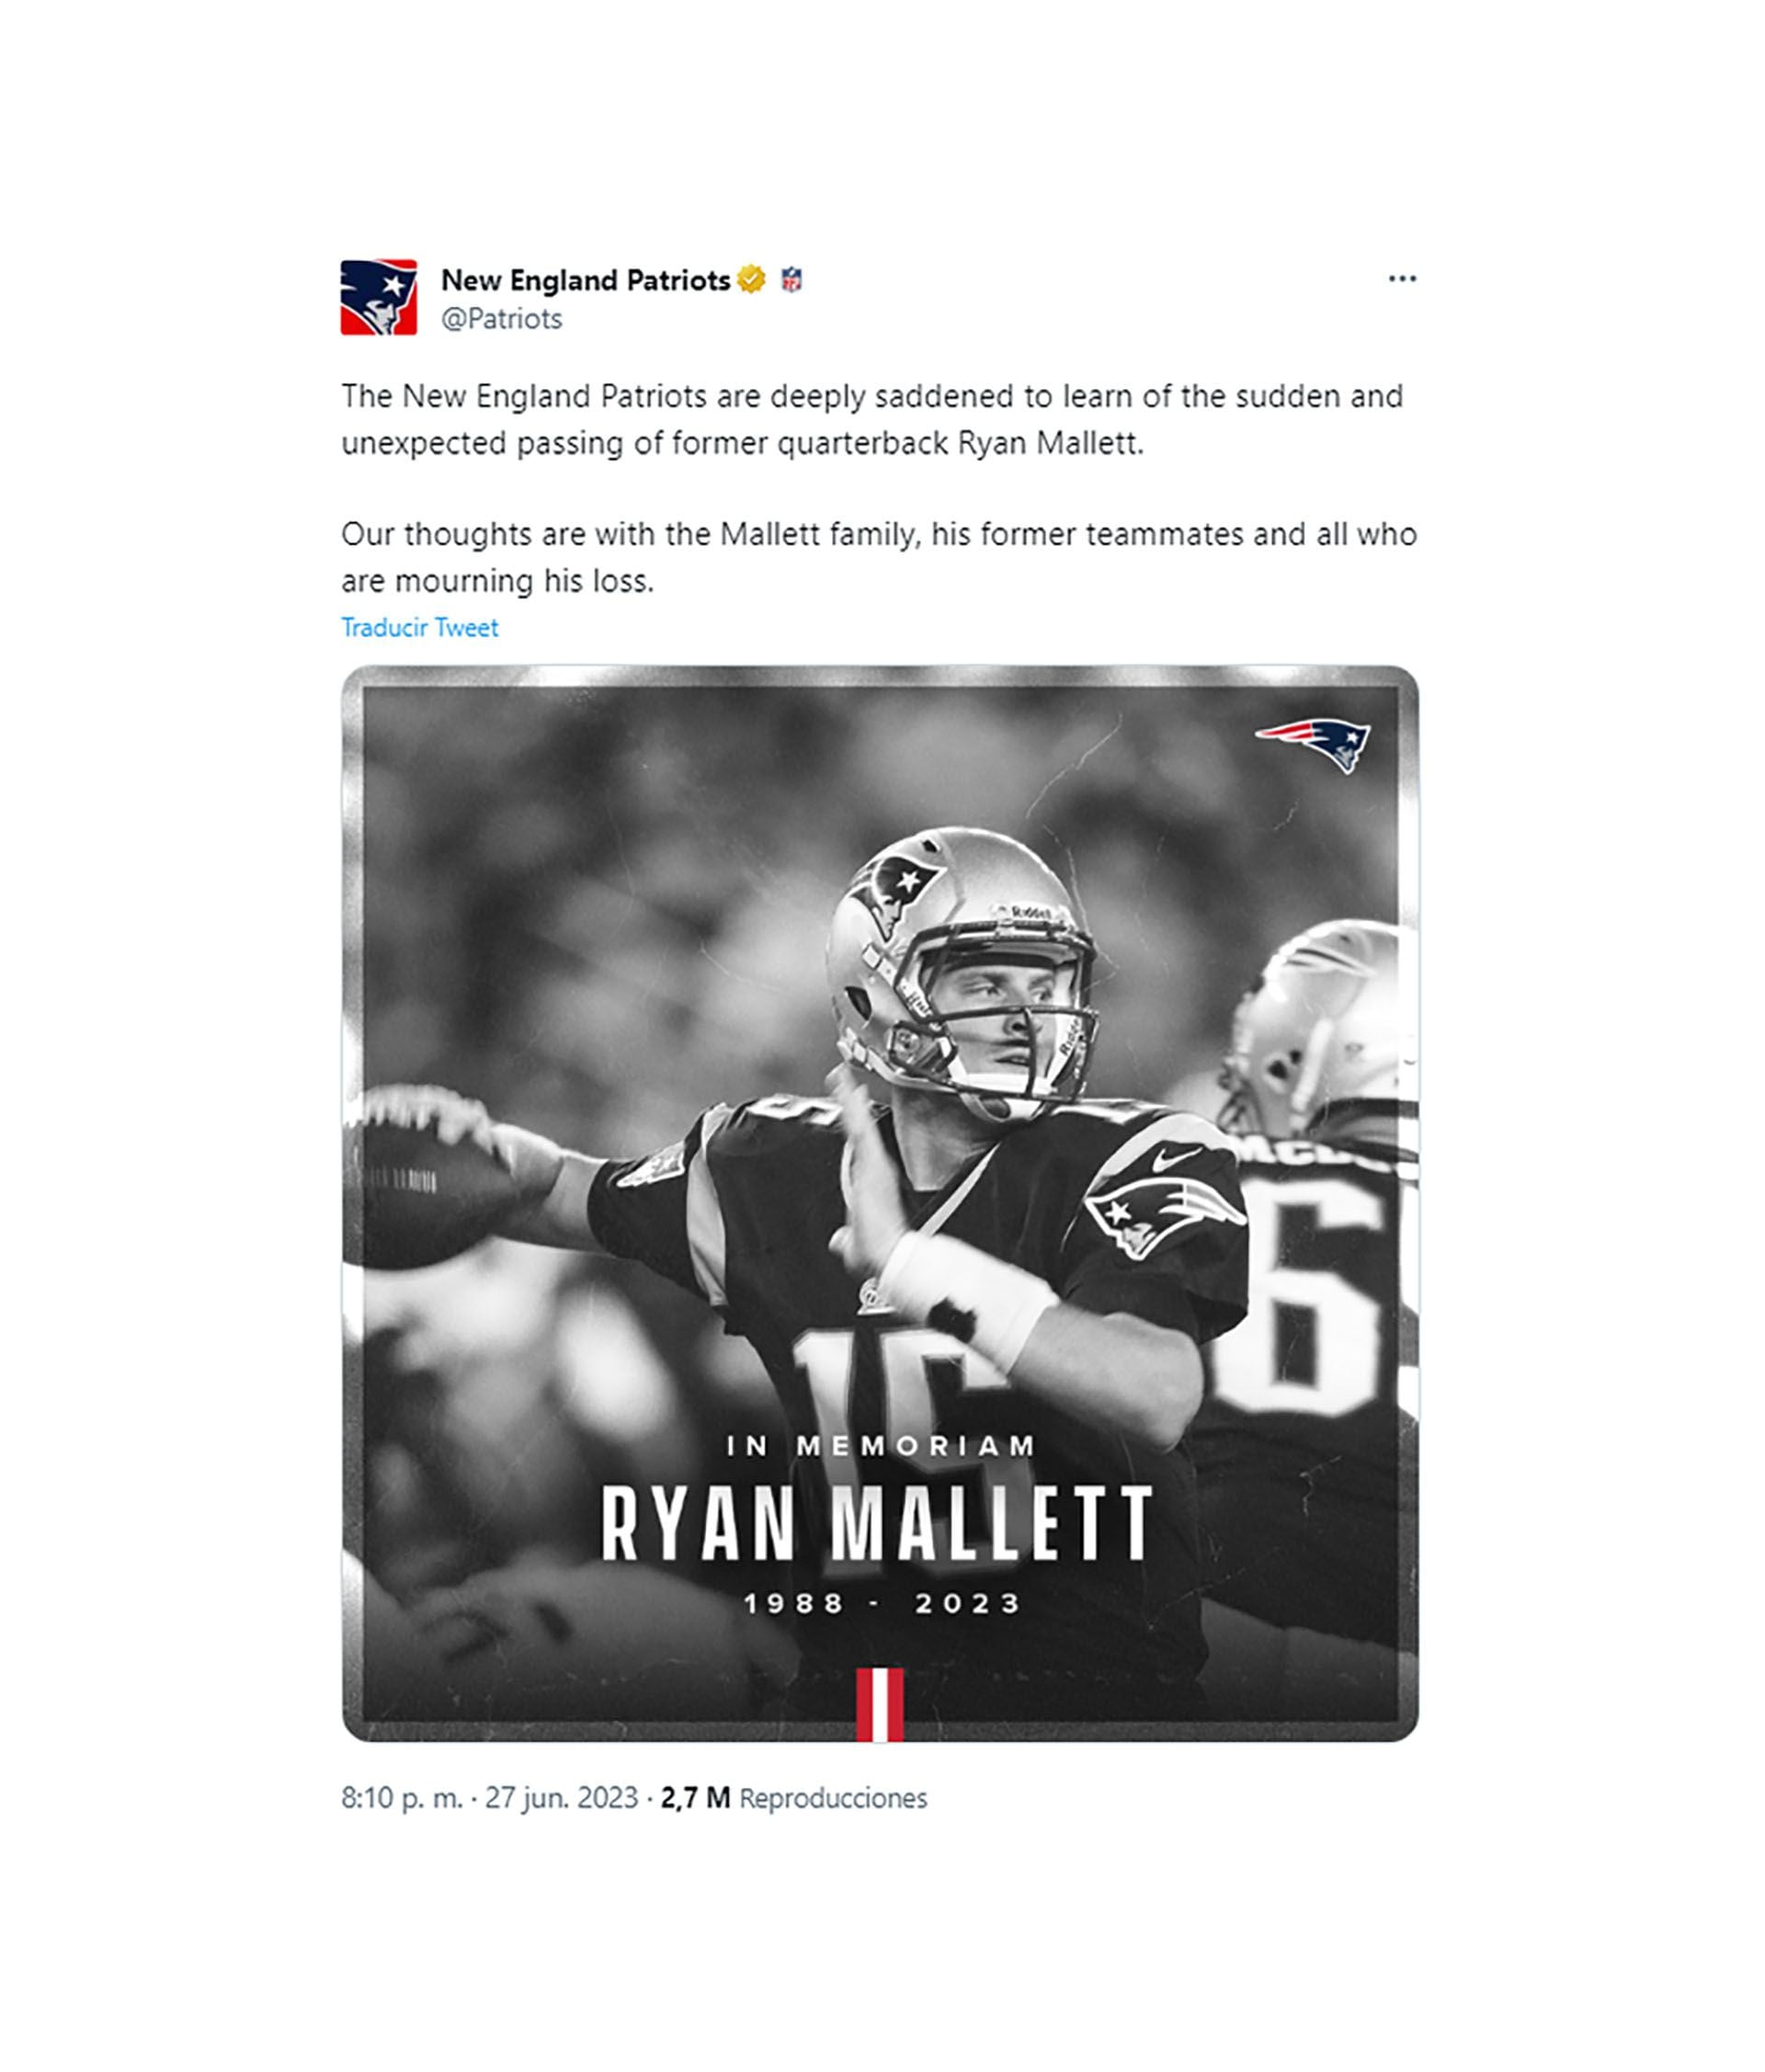 Muere Ryan Mallett captura tuit